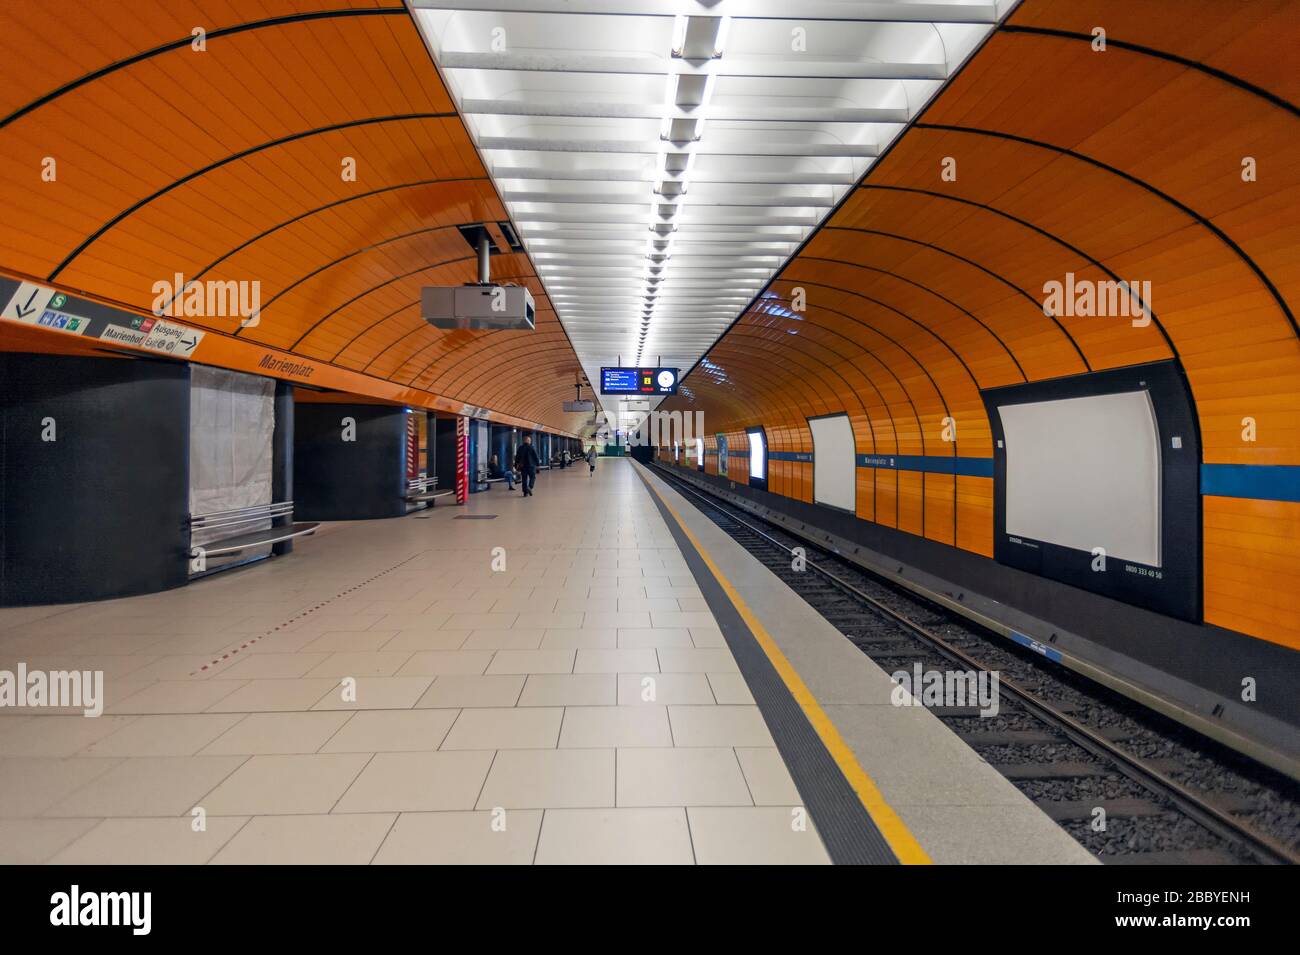 Monaco di Baviera - Germania, 31. Marzo 2020: Stazione ferroviaria vuota a causa del virus Corona a Marienplatz, Monaco di Baviera in Germania Foto Stock